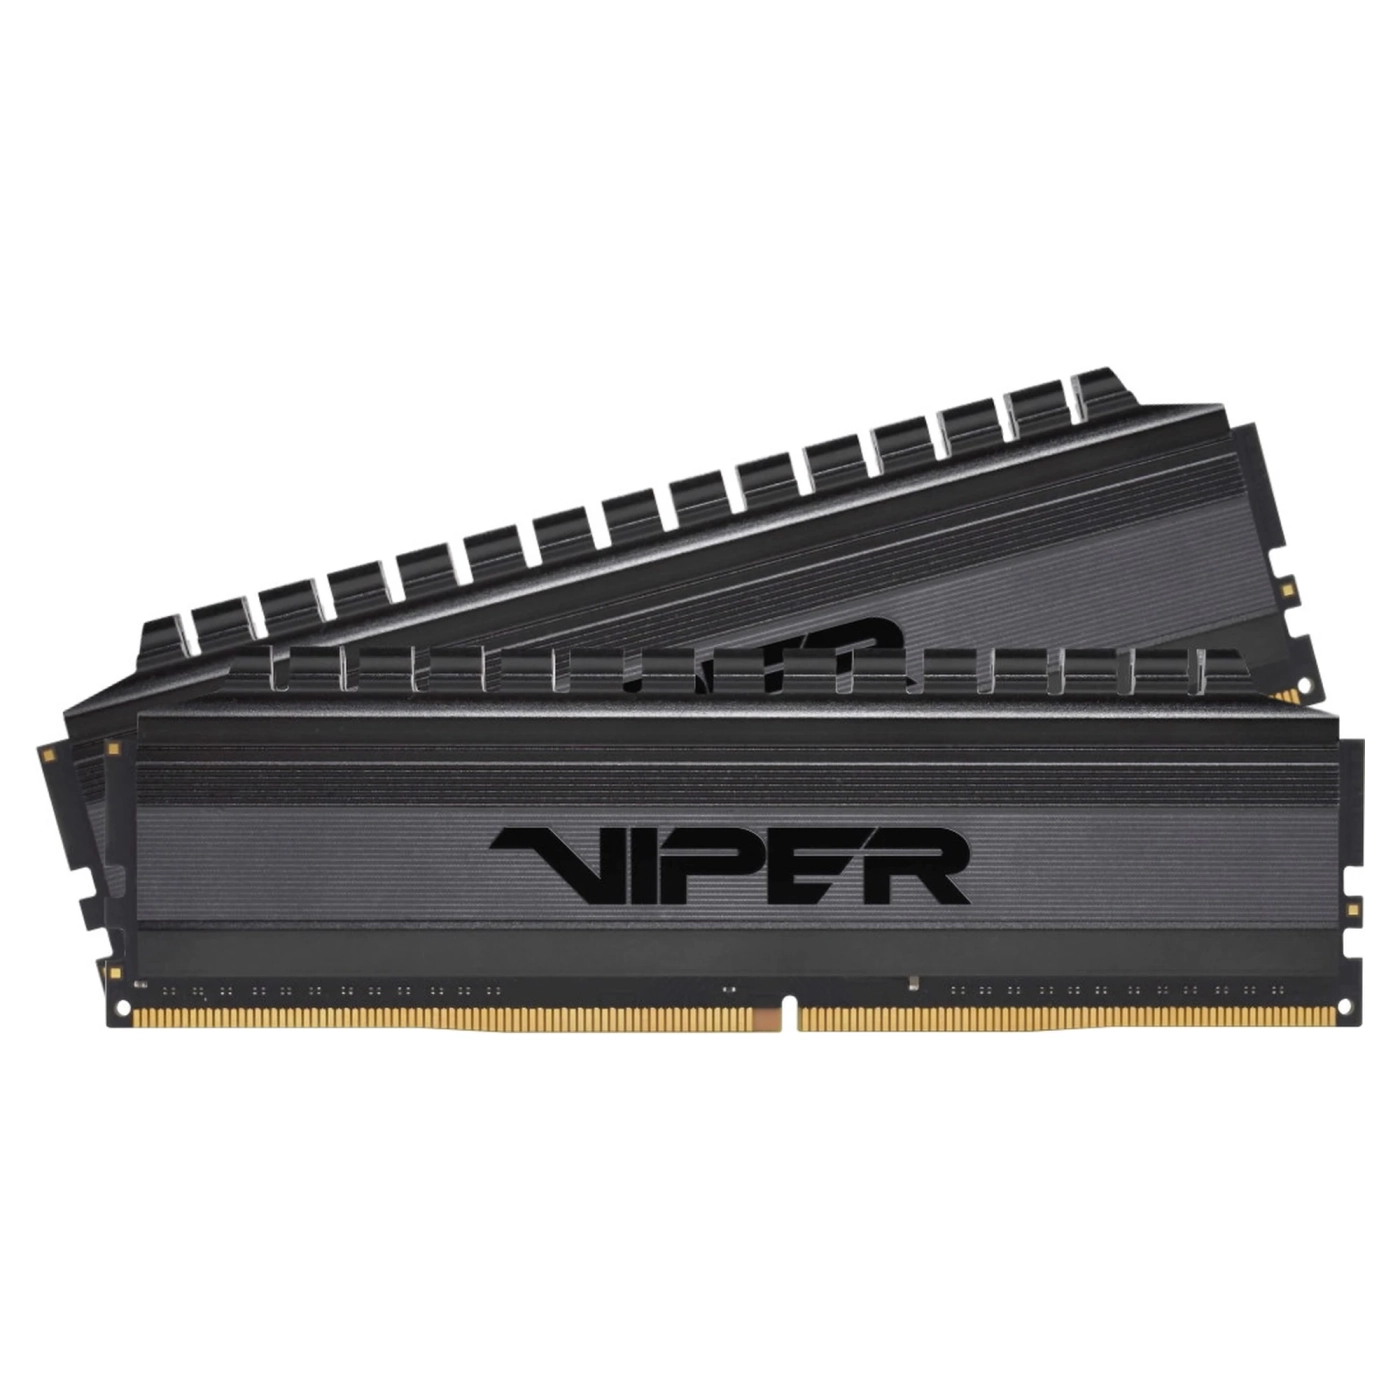 Купить Модуль памяти Patriot Viper 4 Blackout DDR4-3200 64GB (2x32GB) (PVB464G320C6K) - фото 1